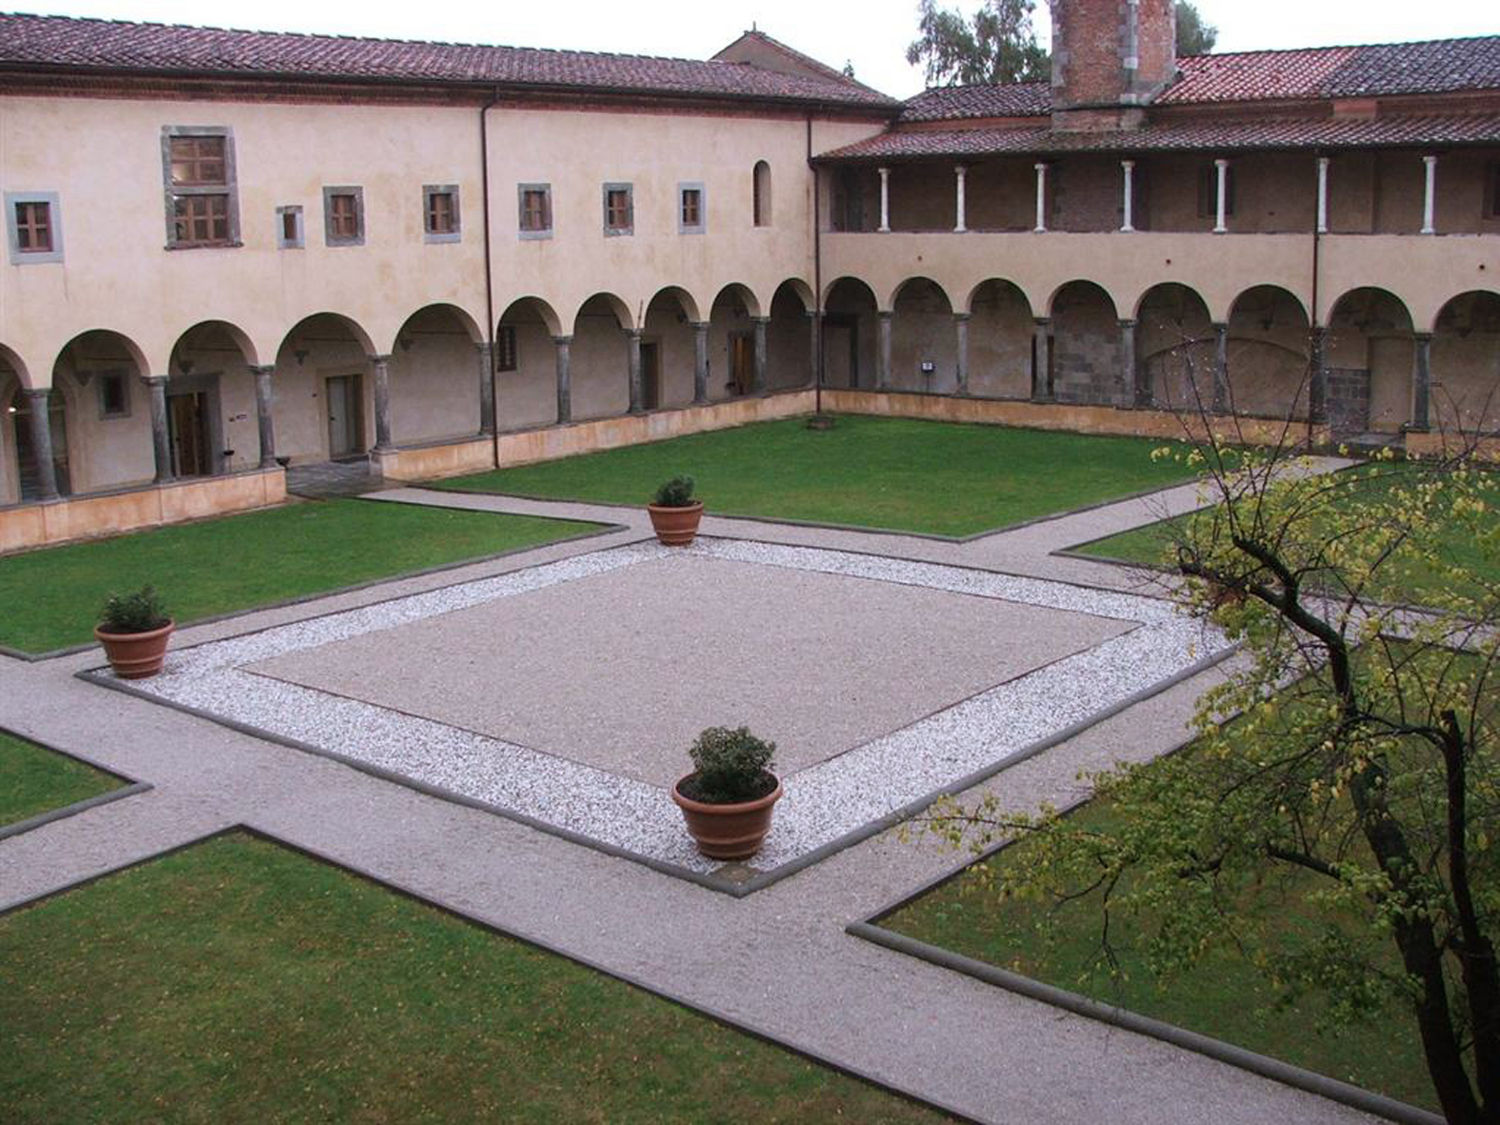 Convento di S. Croce in Fossabanda, il chiostro interno (da http://www.listaippocrate.it)